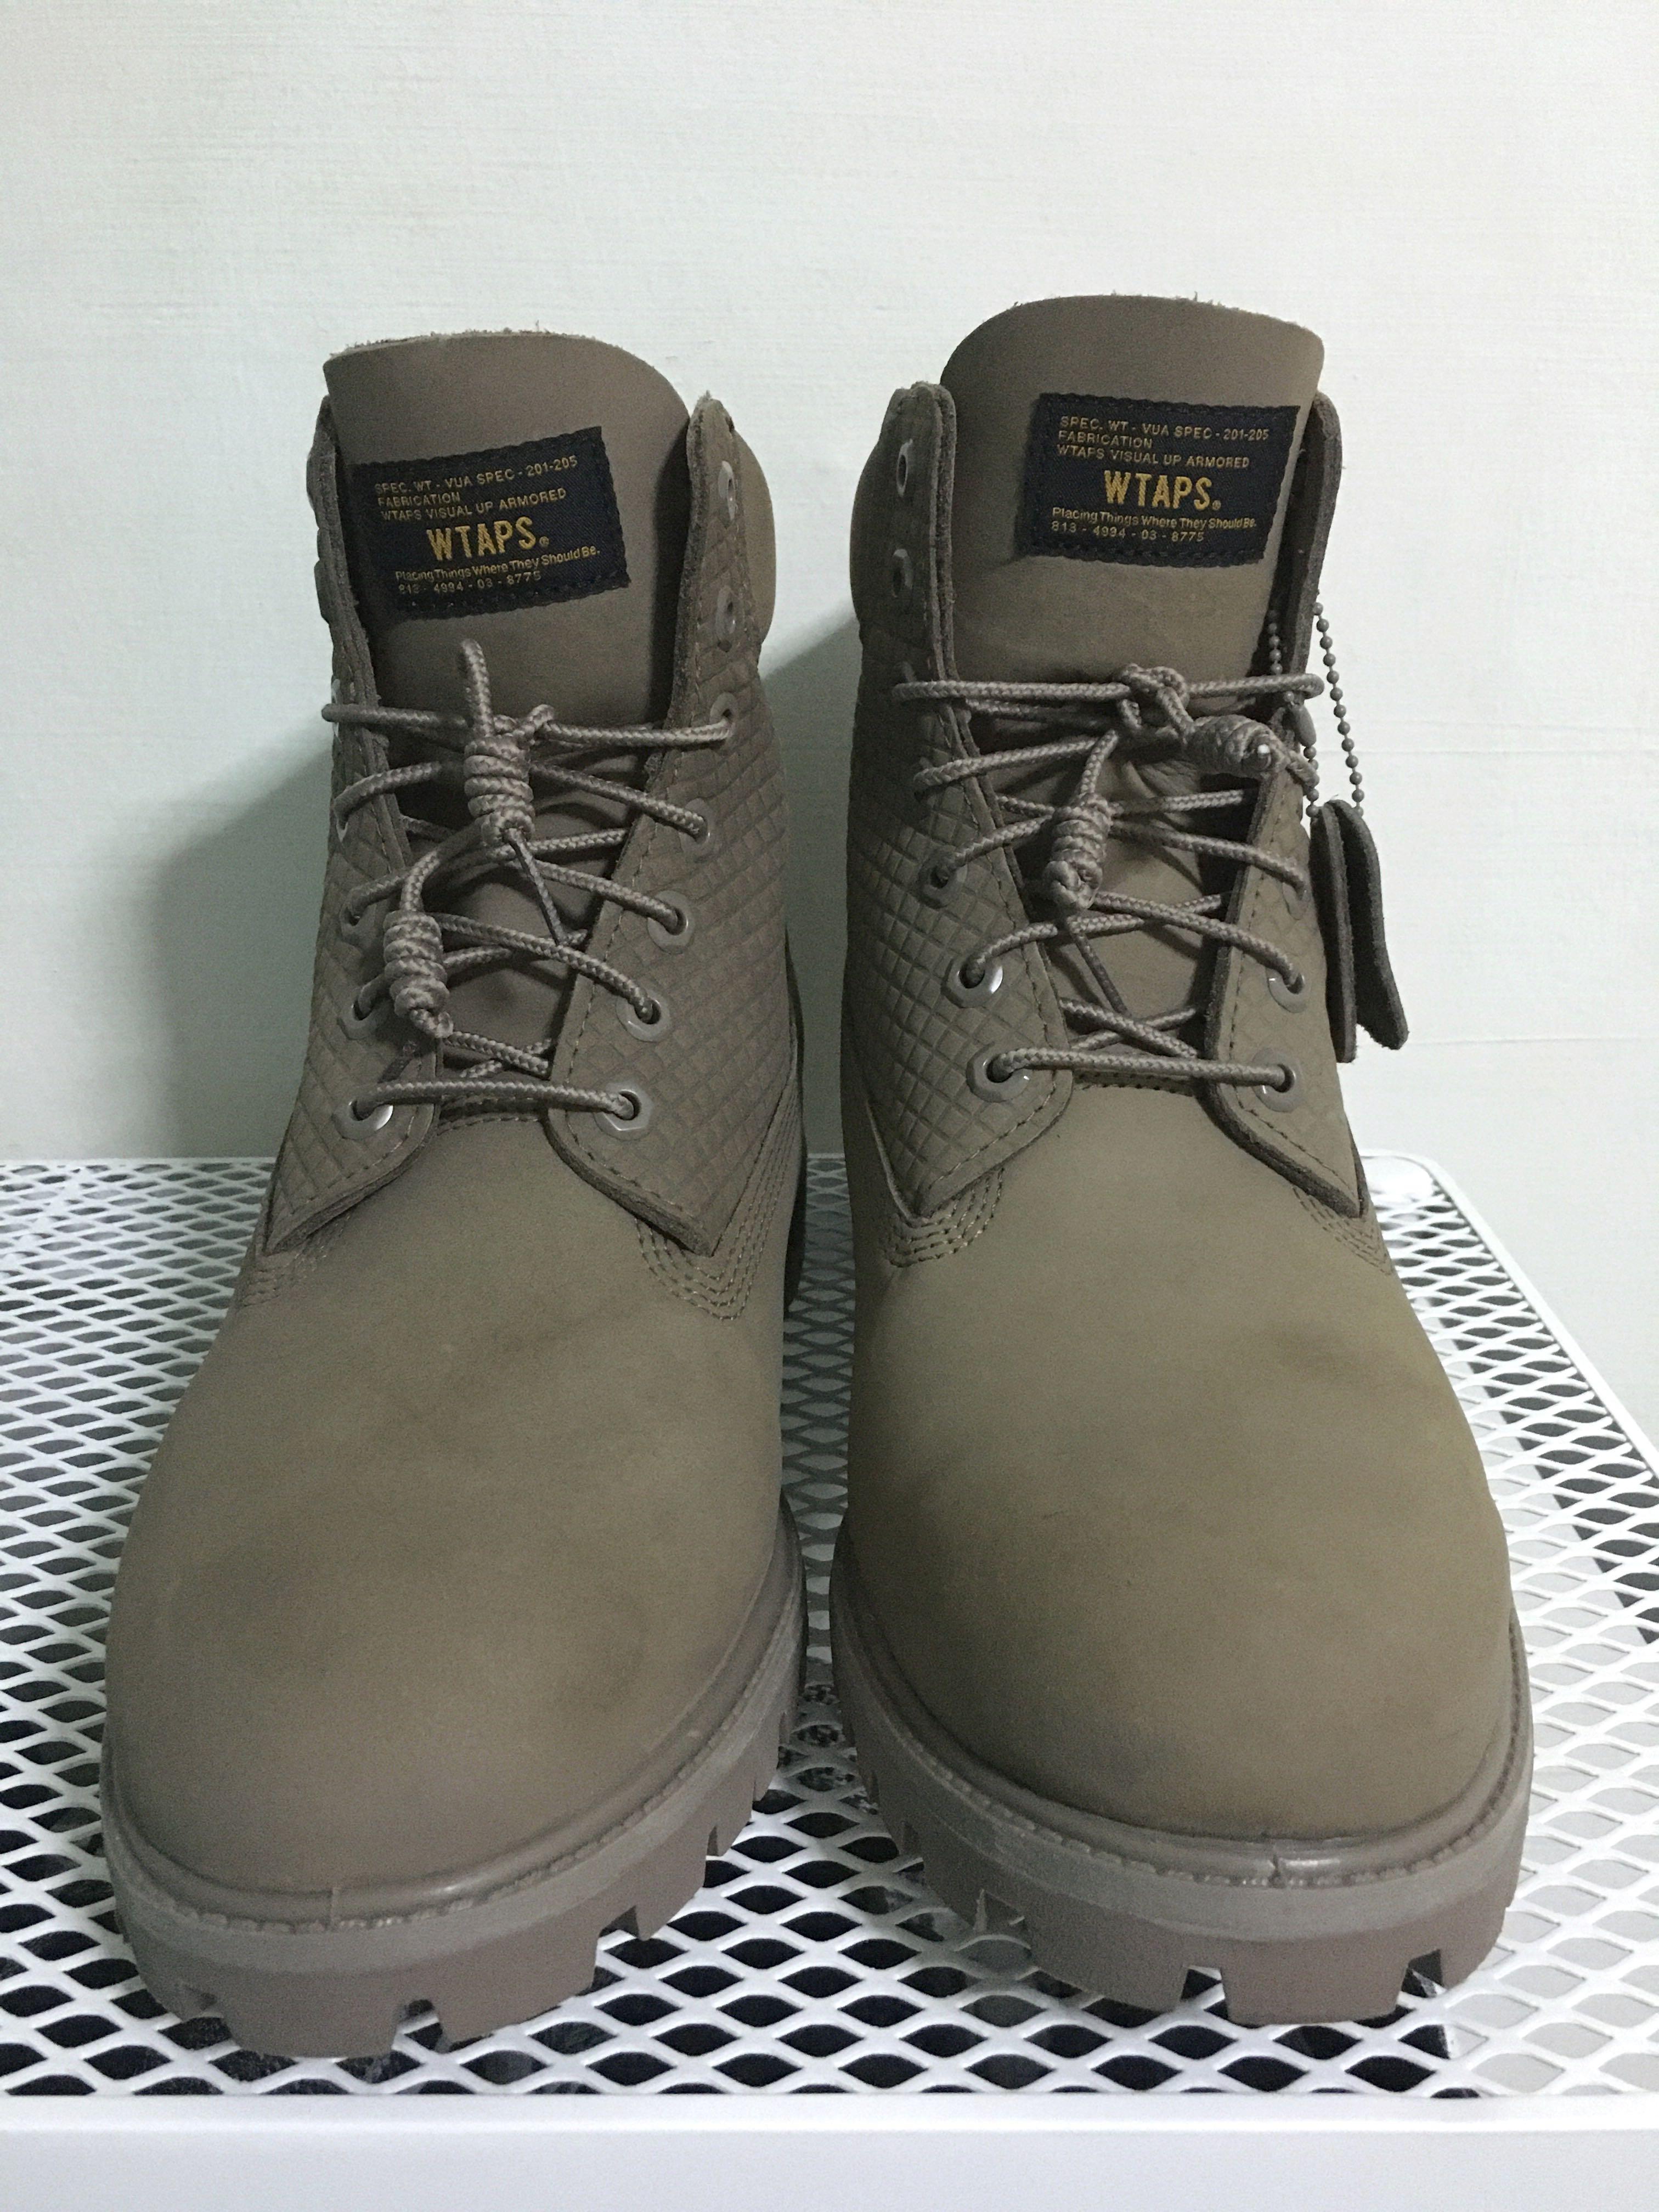 Timberland x Wtaps 6” premium boots